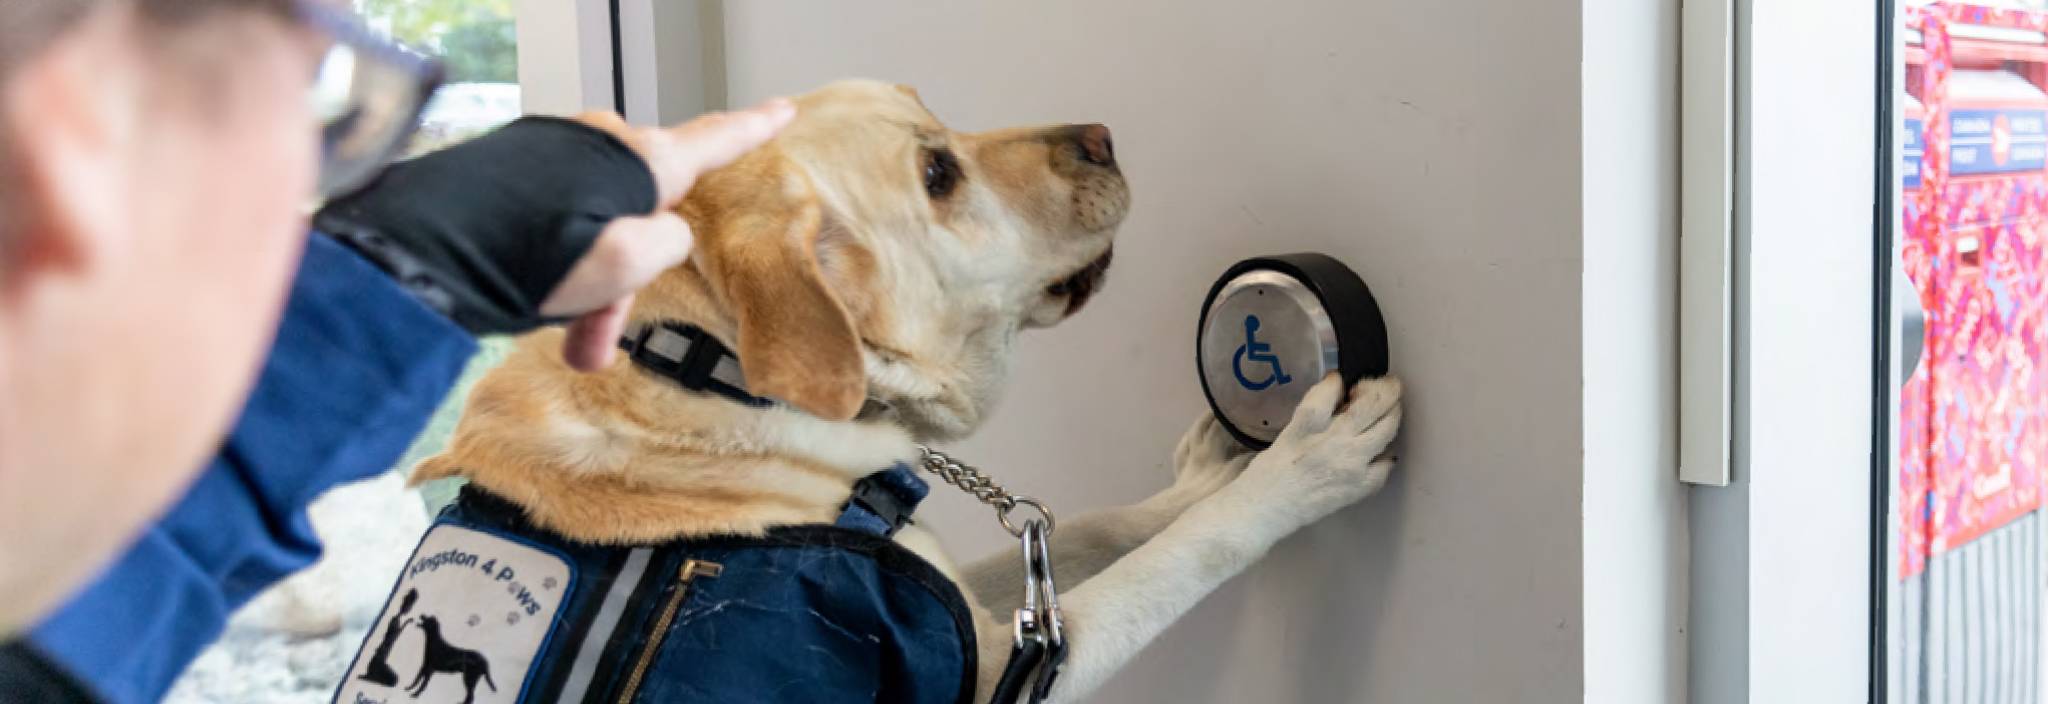 À la demande de sa maîtresse, un chien d’assistance appuie sur le bouton d’ouverture automatique de la porte d’un bureau de poste avec ses pattes.